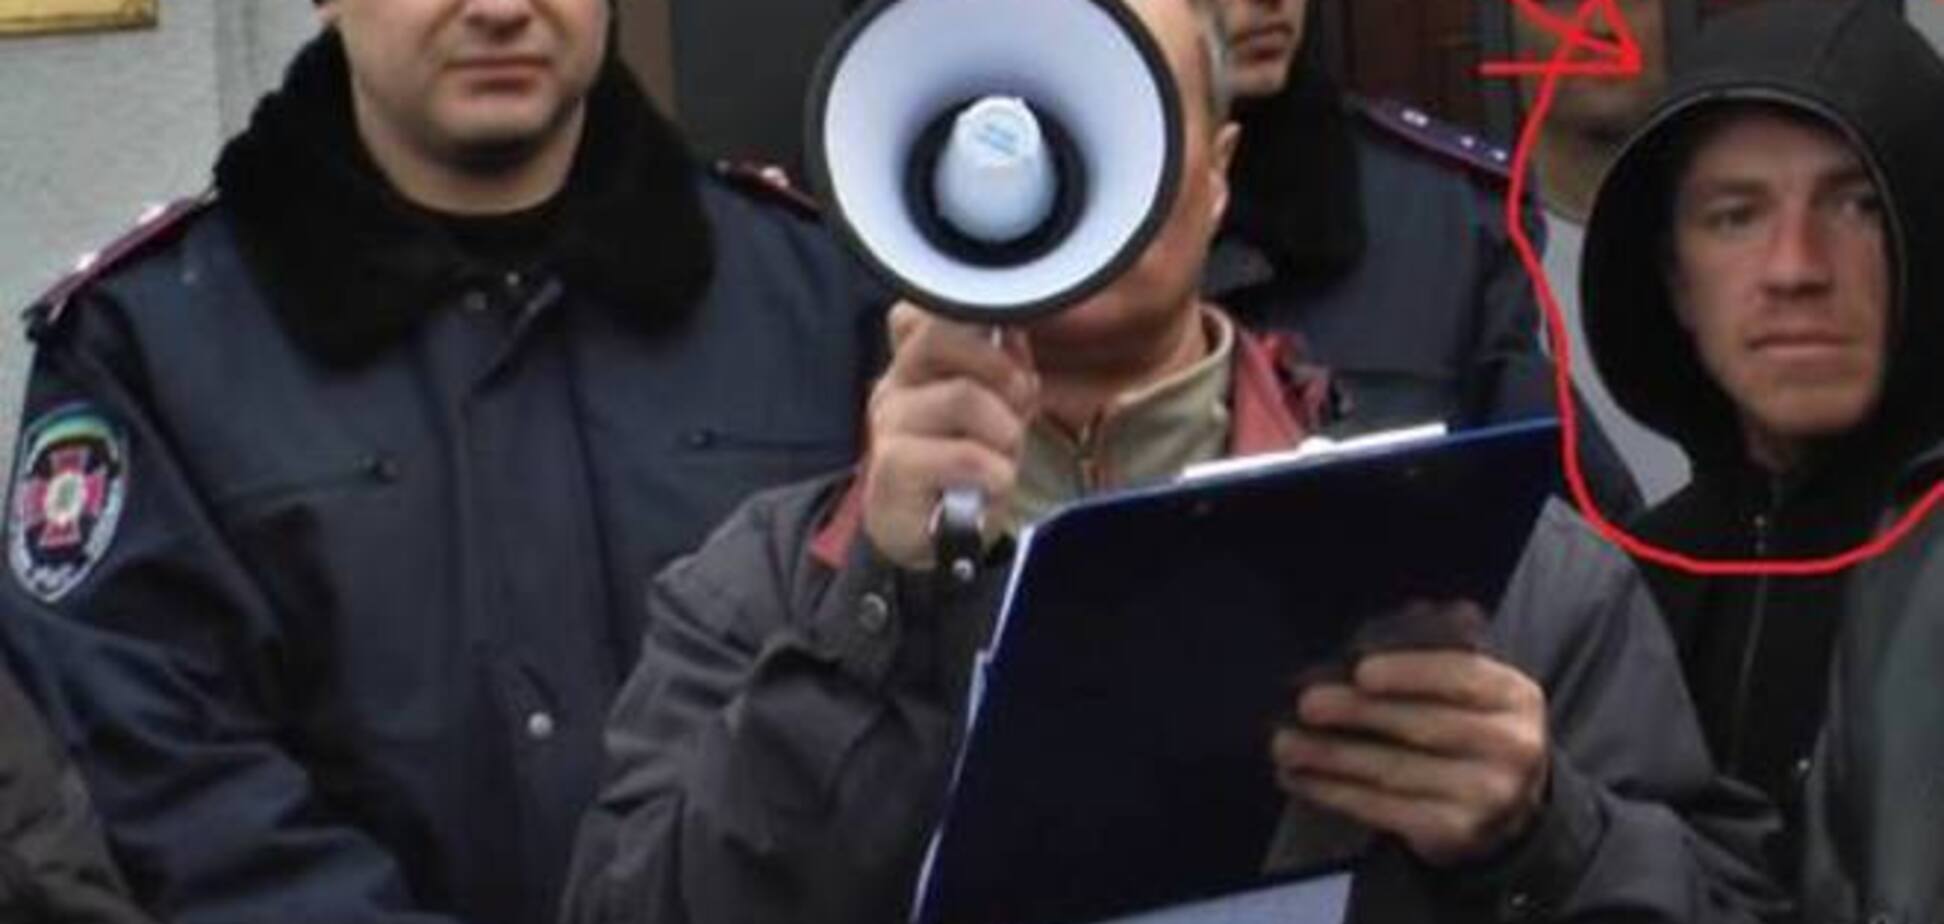 Моторола до войны на Донбассе 'подрабатывал' на митингах в Харькове: видеофакт